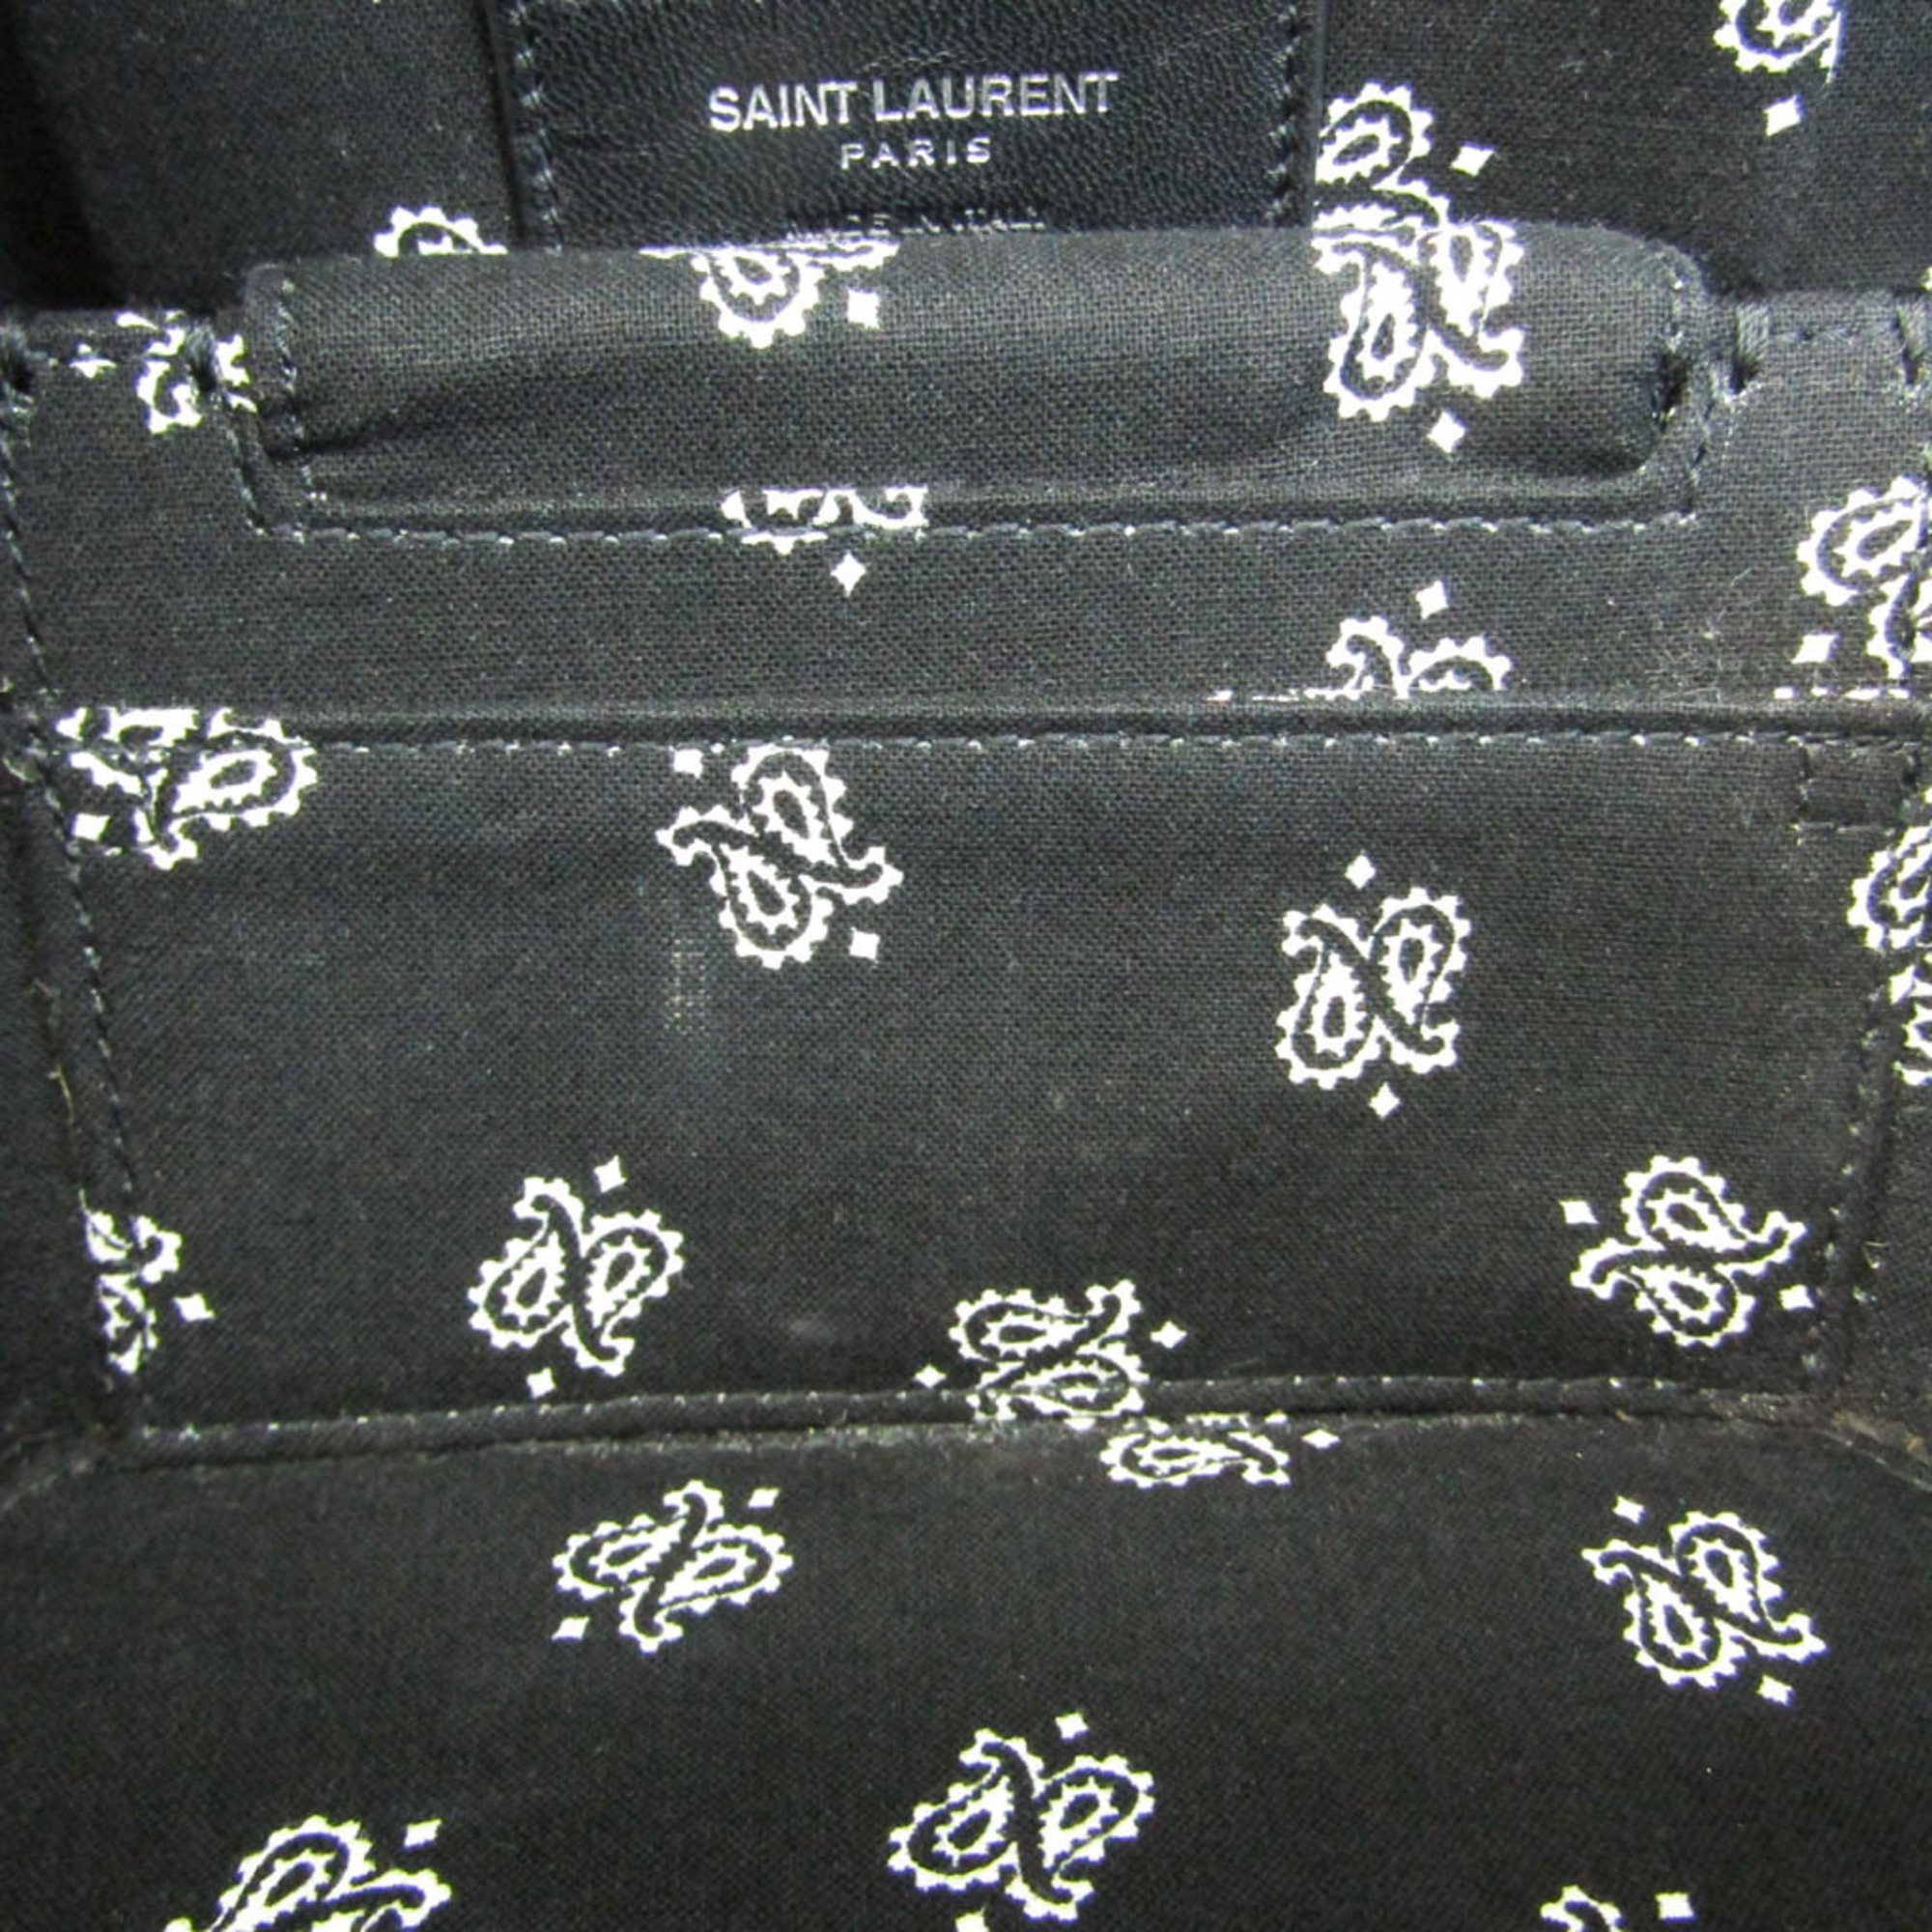 Saint Laurent Mika Box 516858 Women's Leather Shoulder Bag Black